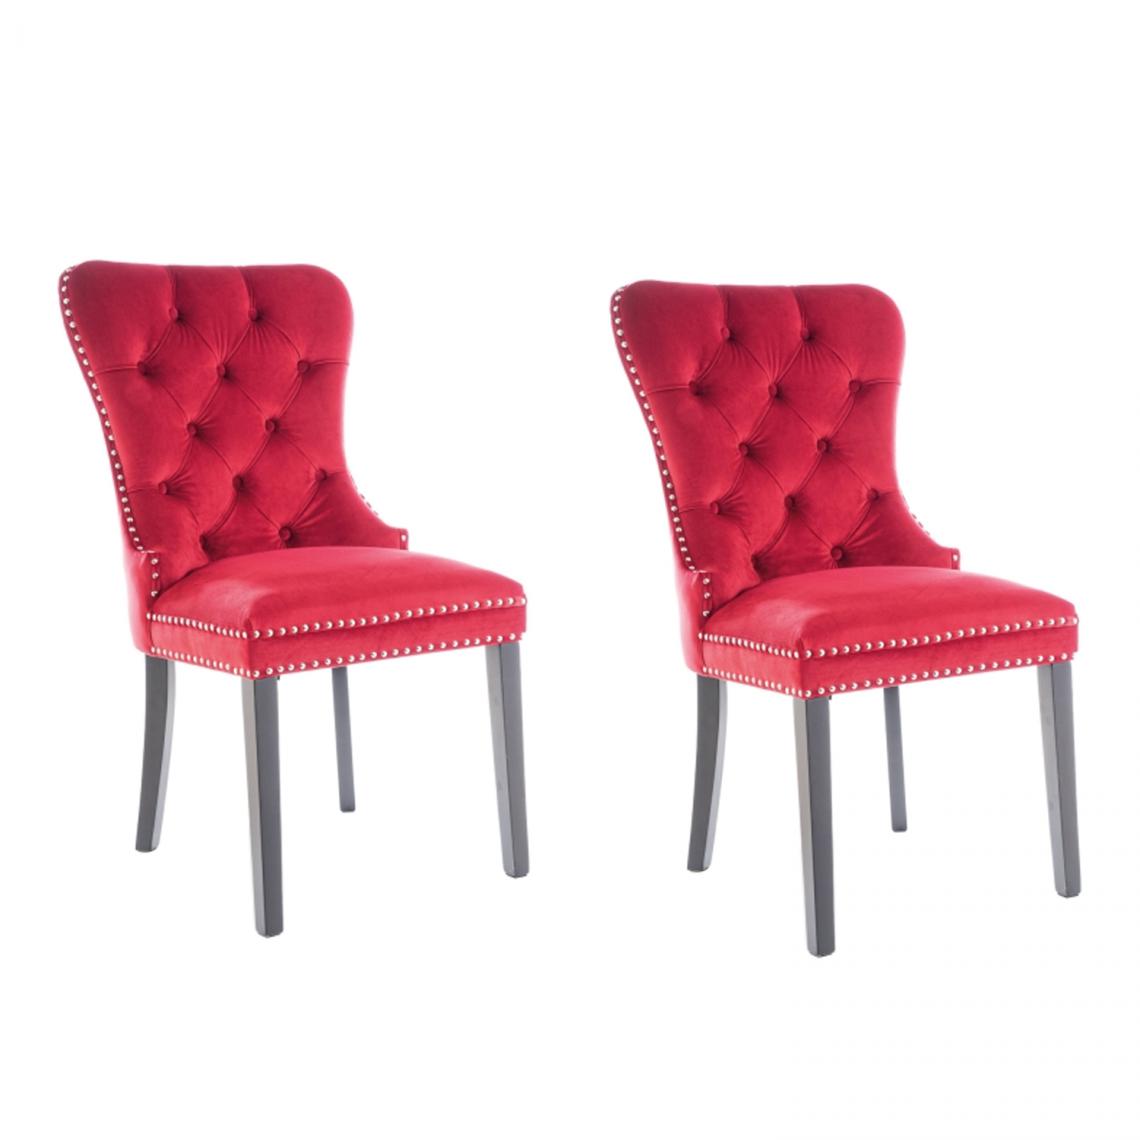 Hucoco - AMANDI - Lot de 2 chaises en tissu velouté -98x56x45 cm - Structure en bois - Style glamour - Rouge - Chaises